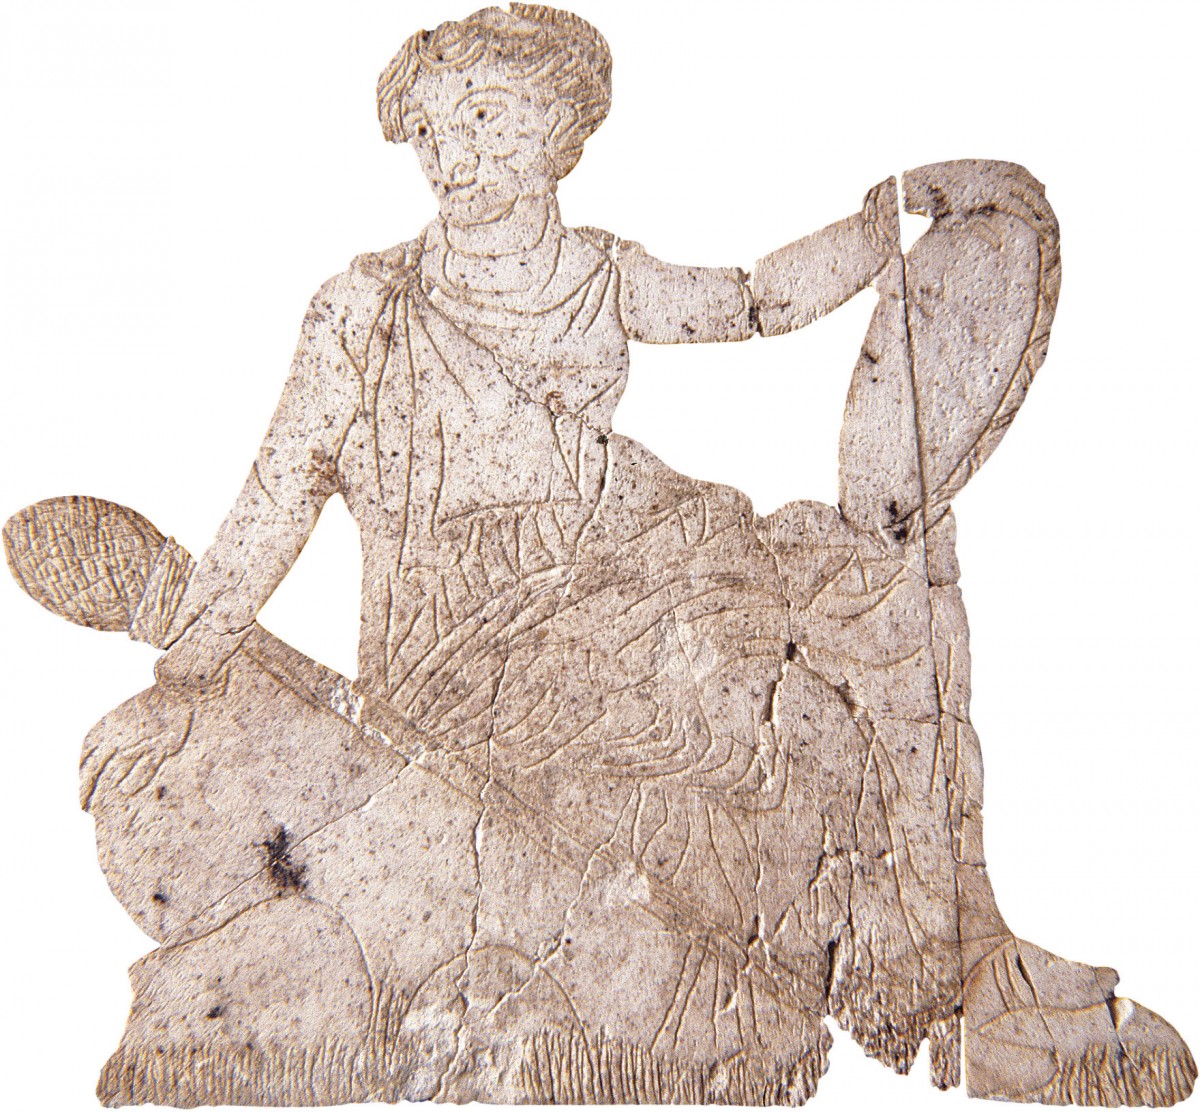 Ελεφαντοστέινο πλακίδιο από διακόσμηση νεκρικής κλίνης που εικονίζει Μαινάδα, 325-300 π.Χ. Από τάφο της Μεθώνης. Εφορεία Αρχαιοτήτων Πιερίας. Photo © ΥΠΠΟΑ.